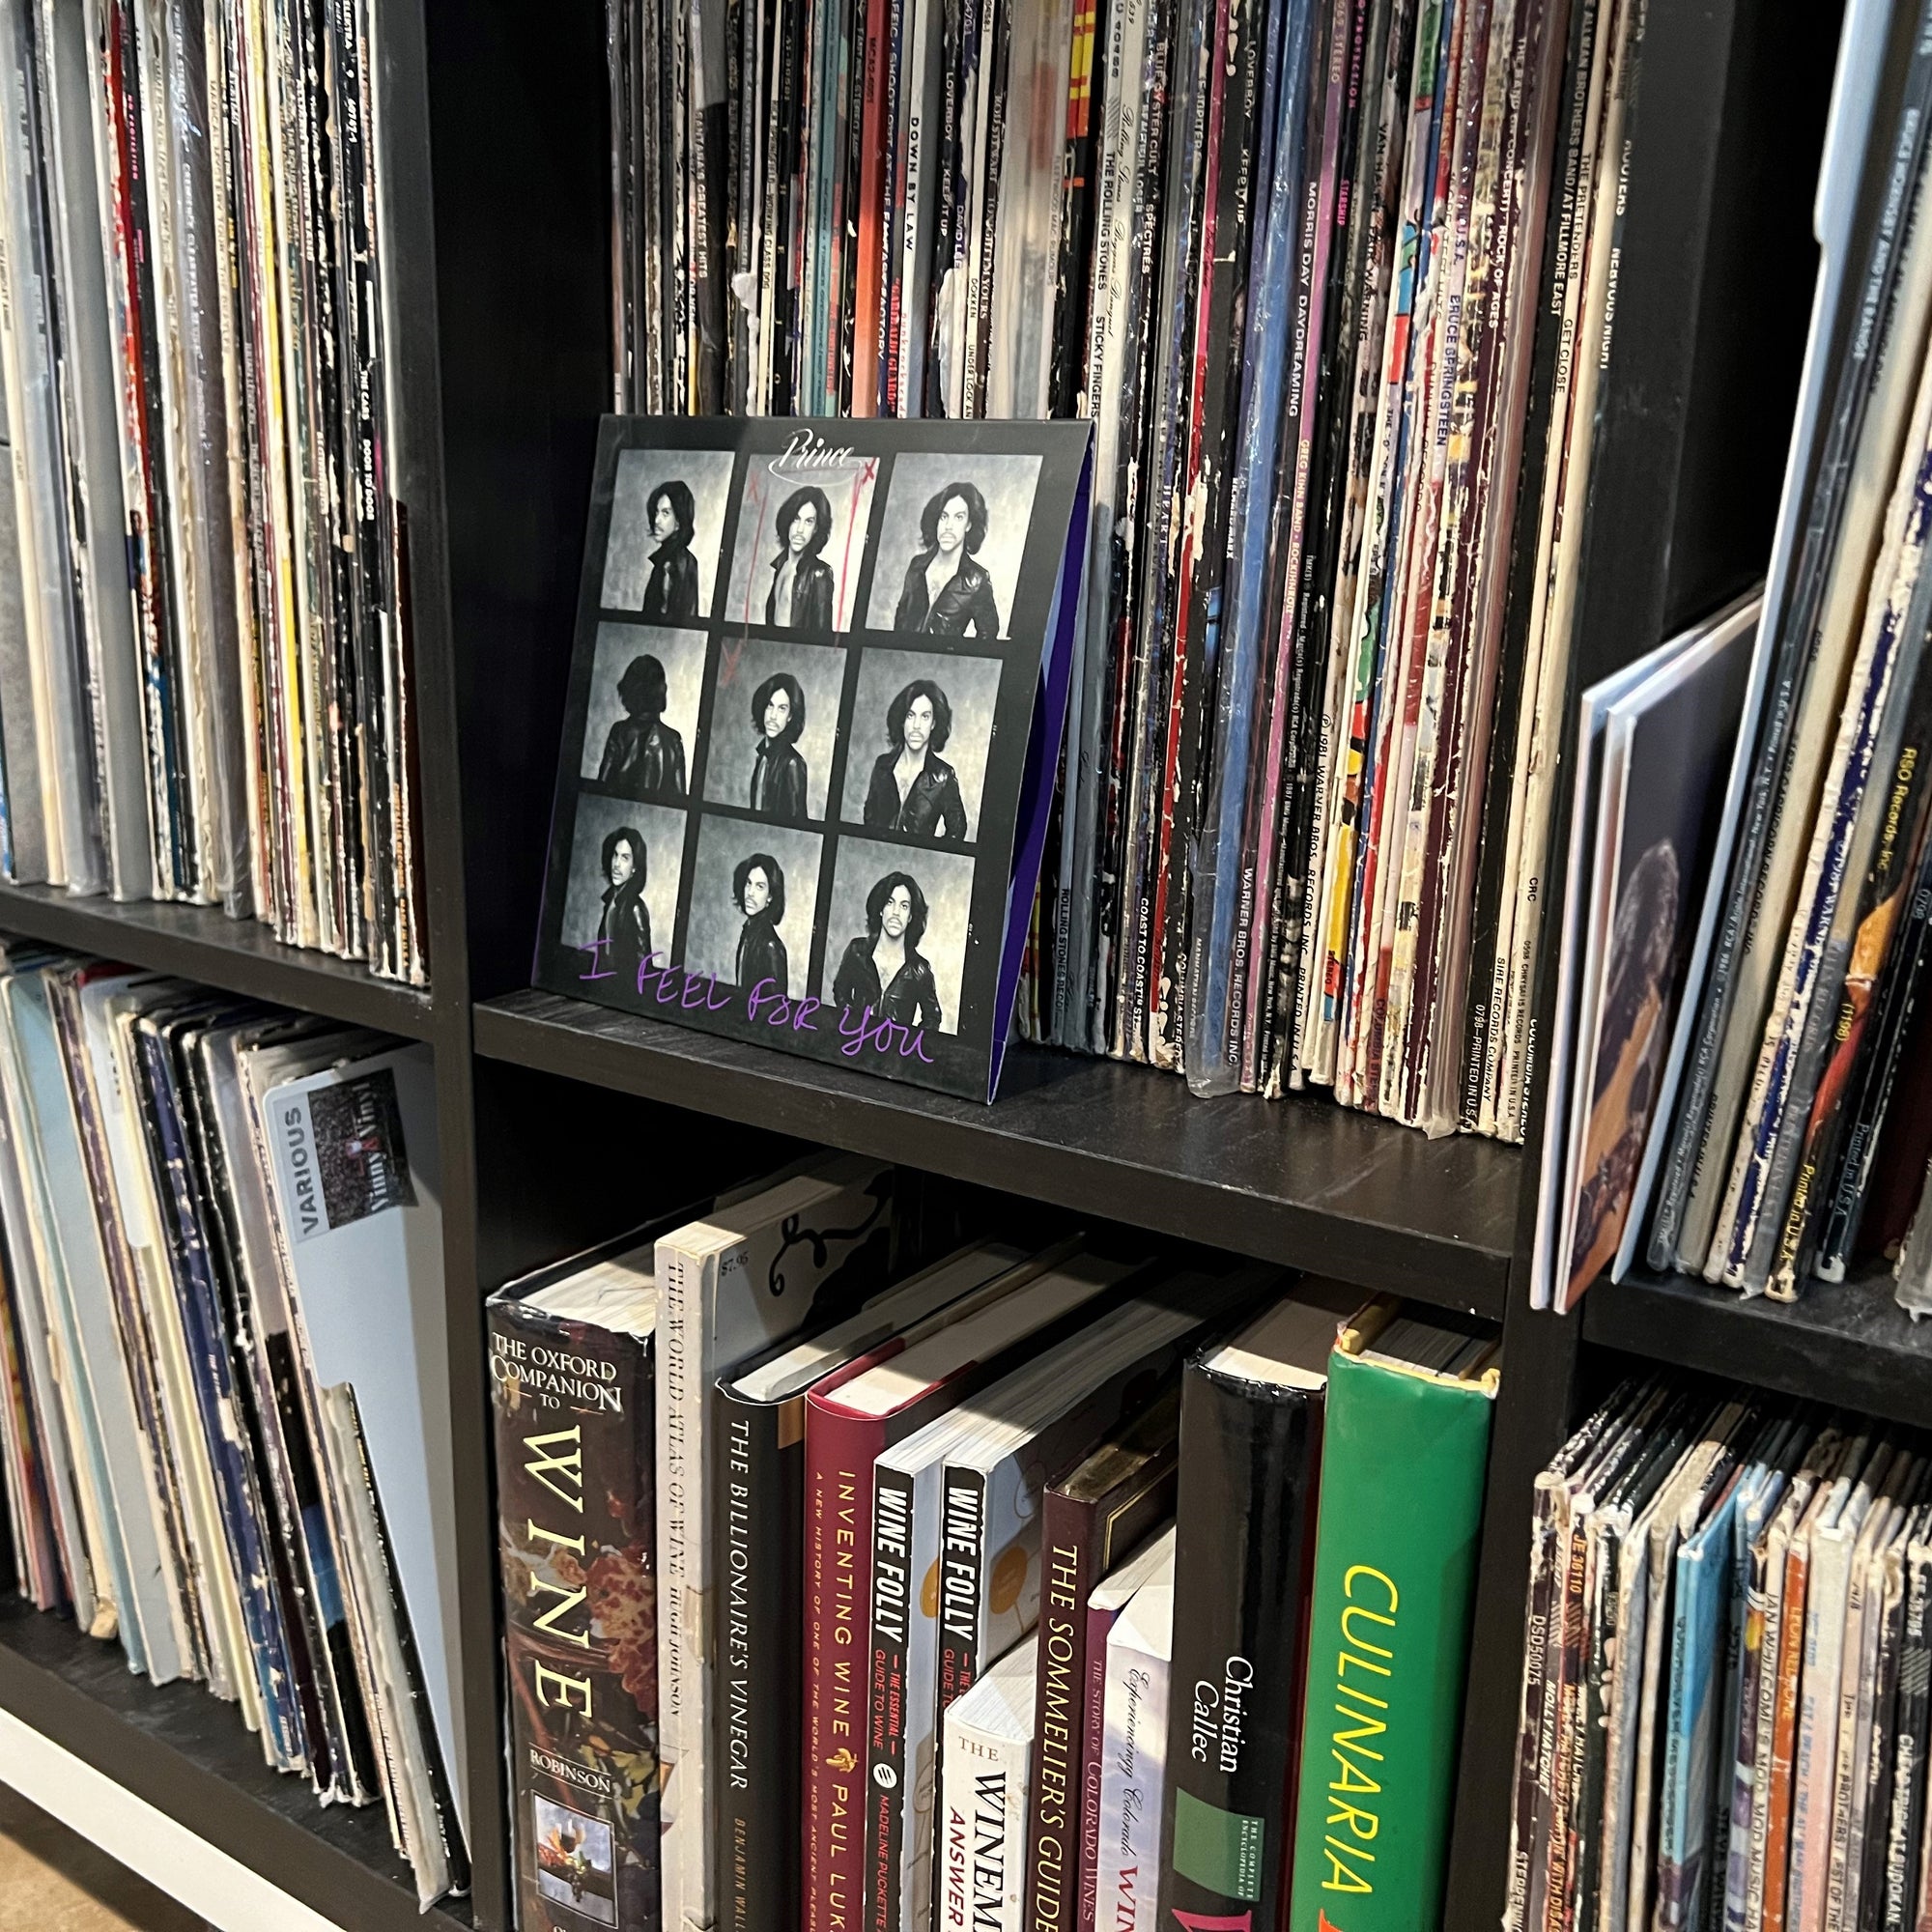 Records on a shelf